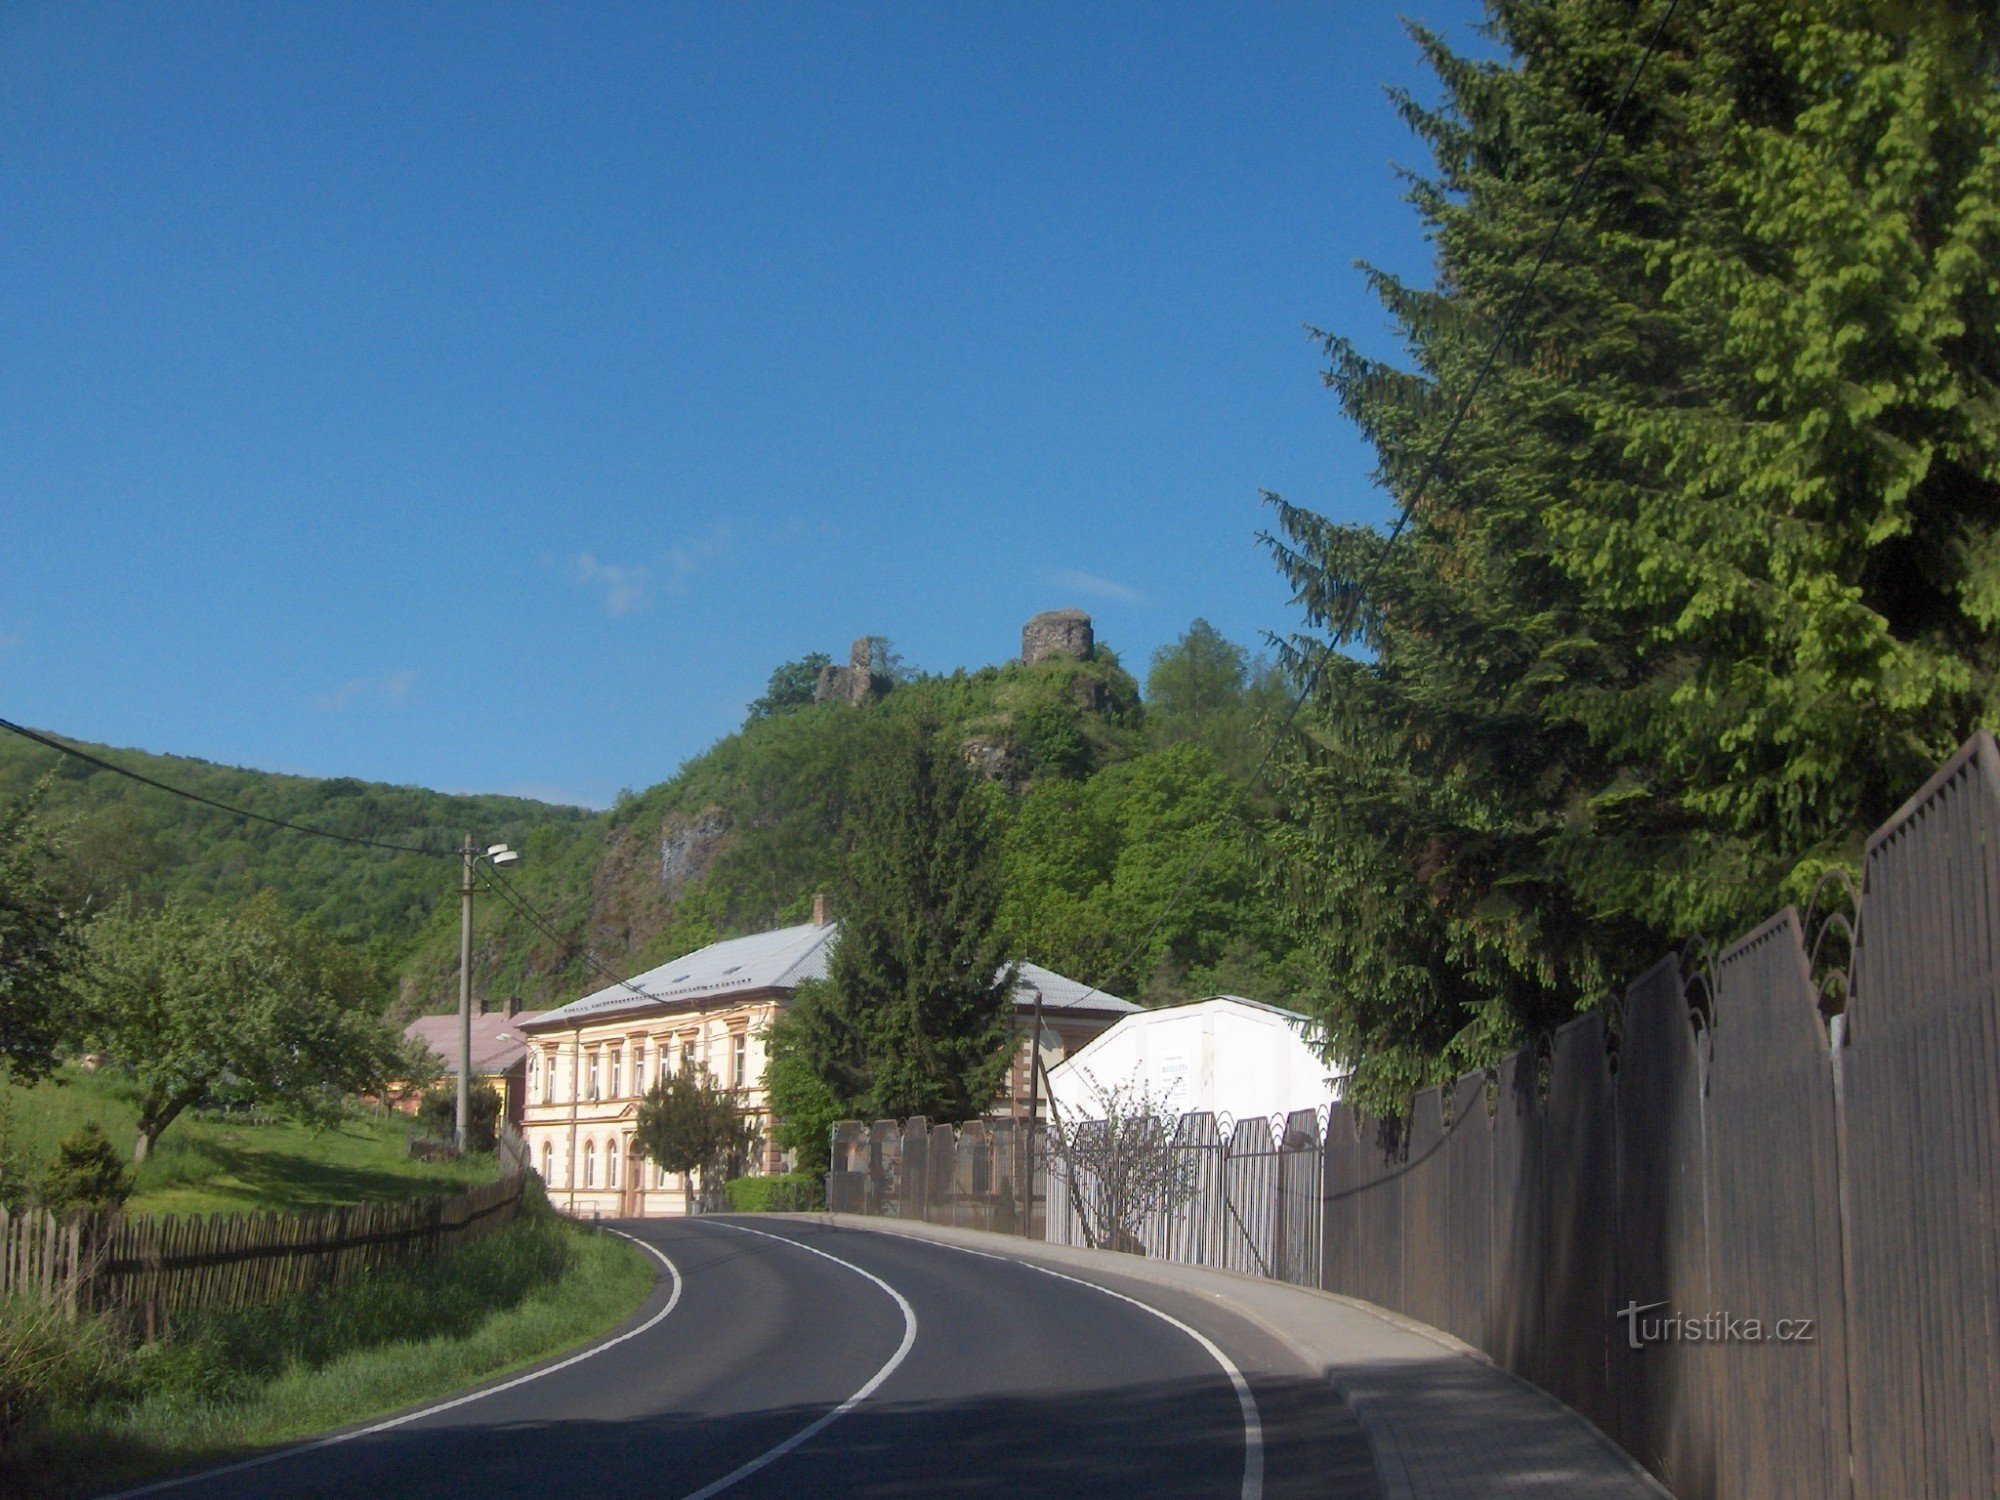 le rovine del castello di Ostrý